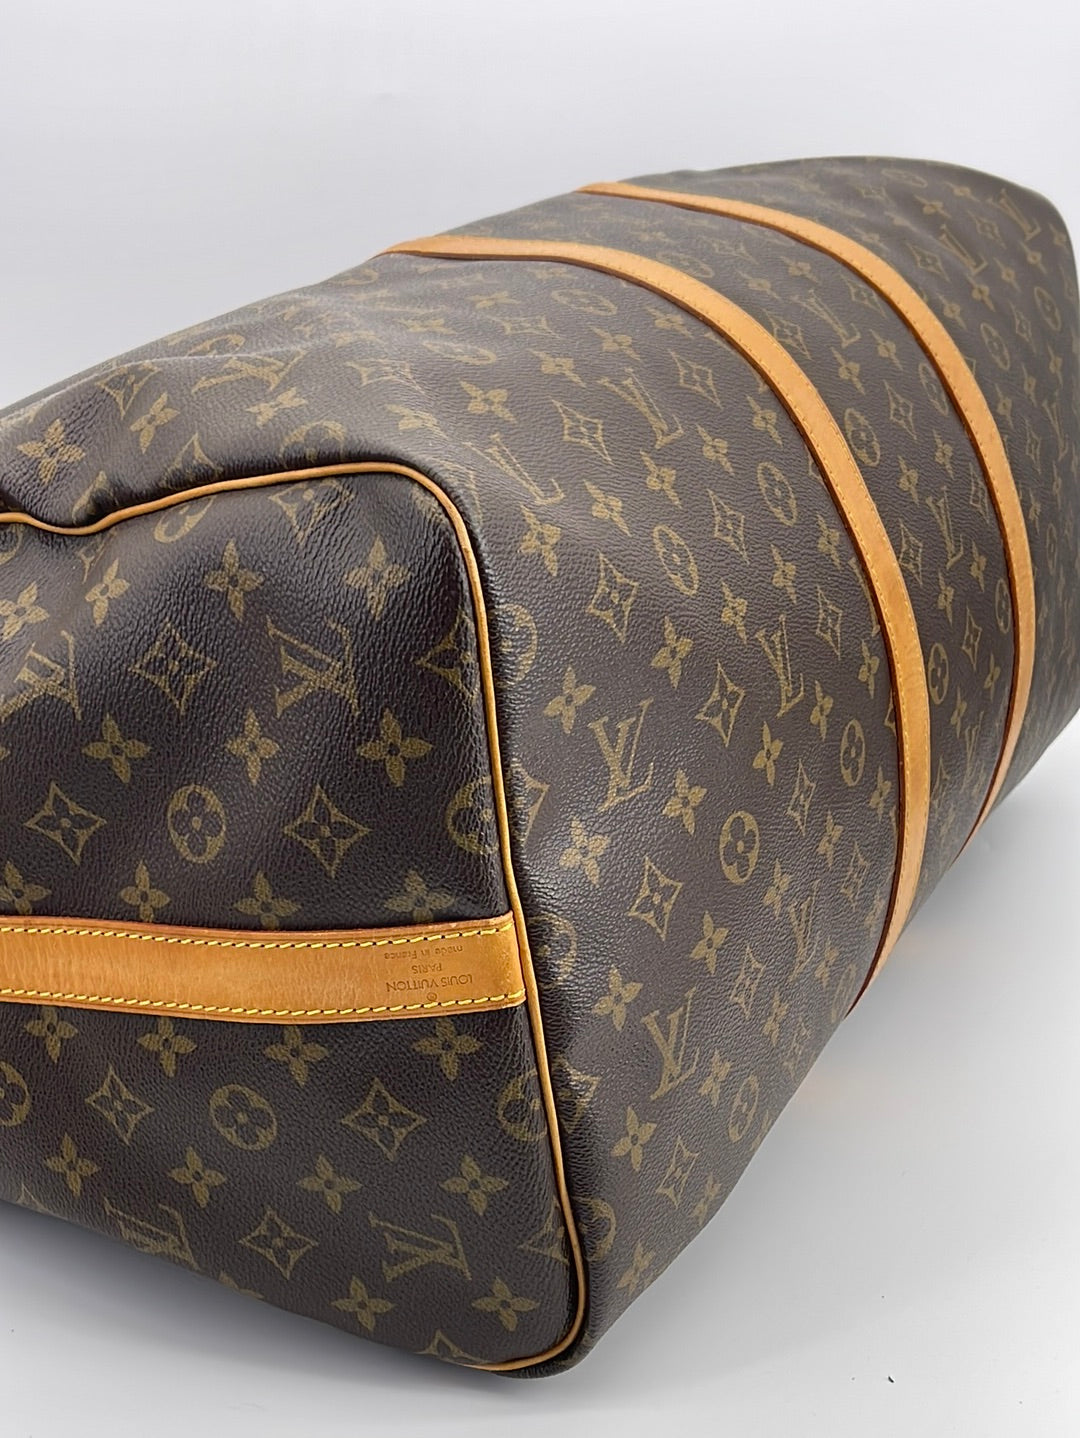 PRELOVED Louis Vuitton Keepall Bandouliere 55 Monogram Duffel Bag TH19 –  KimmieBBags LLC